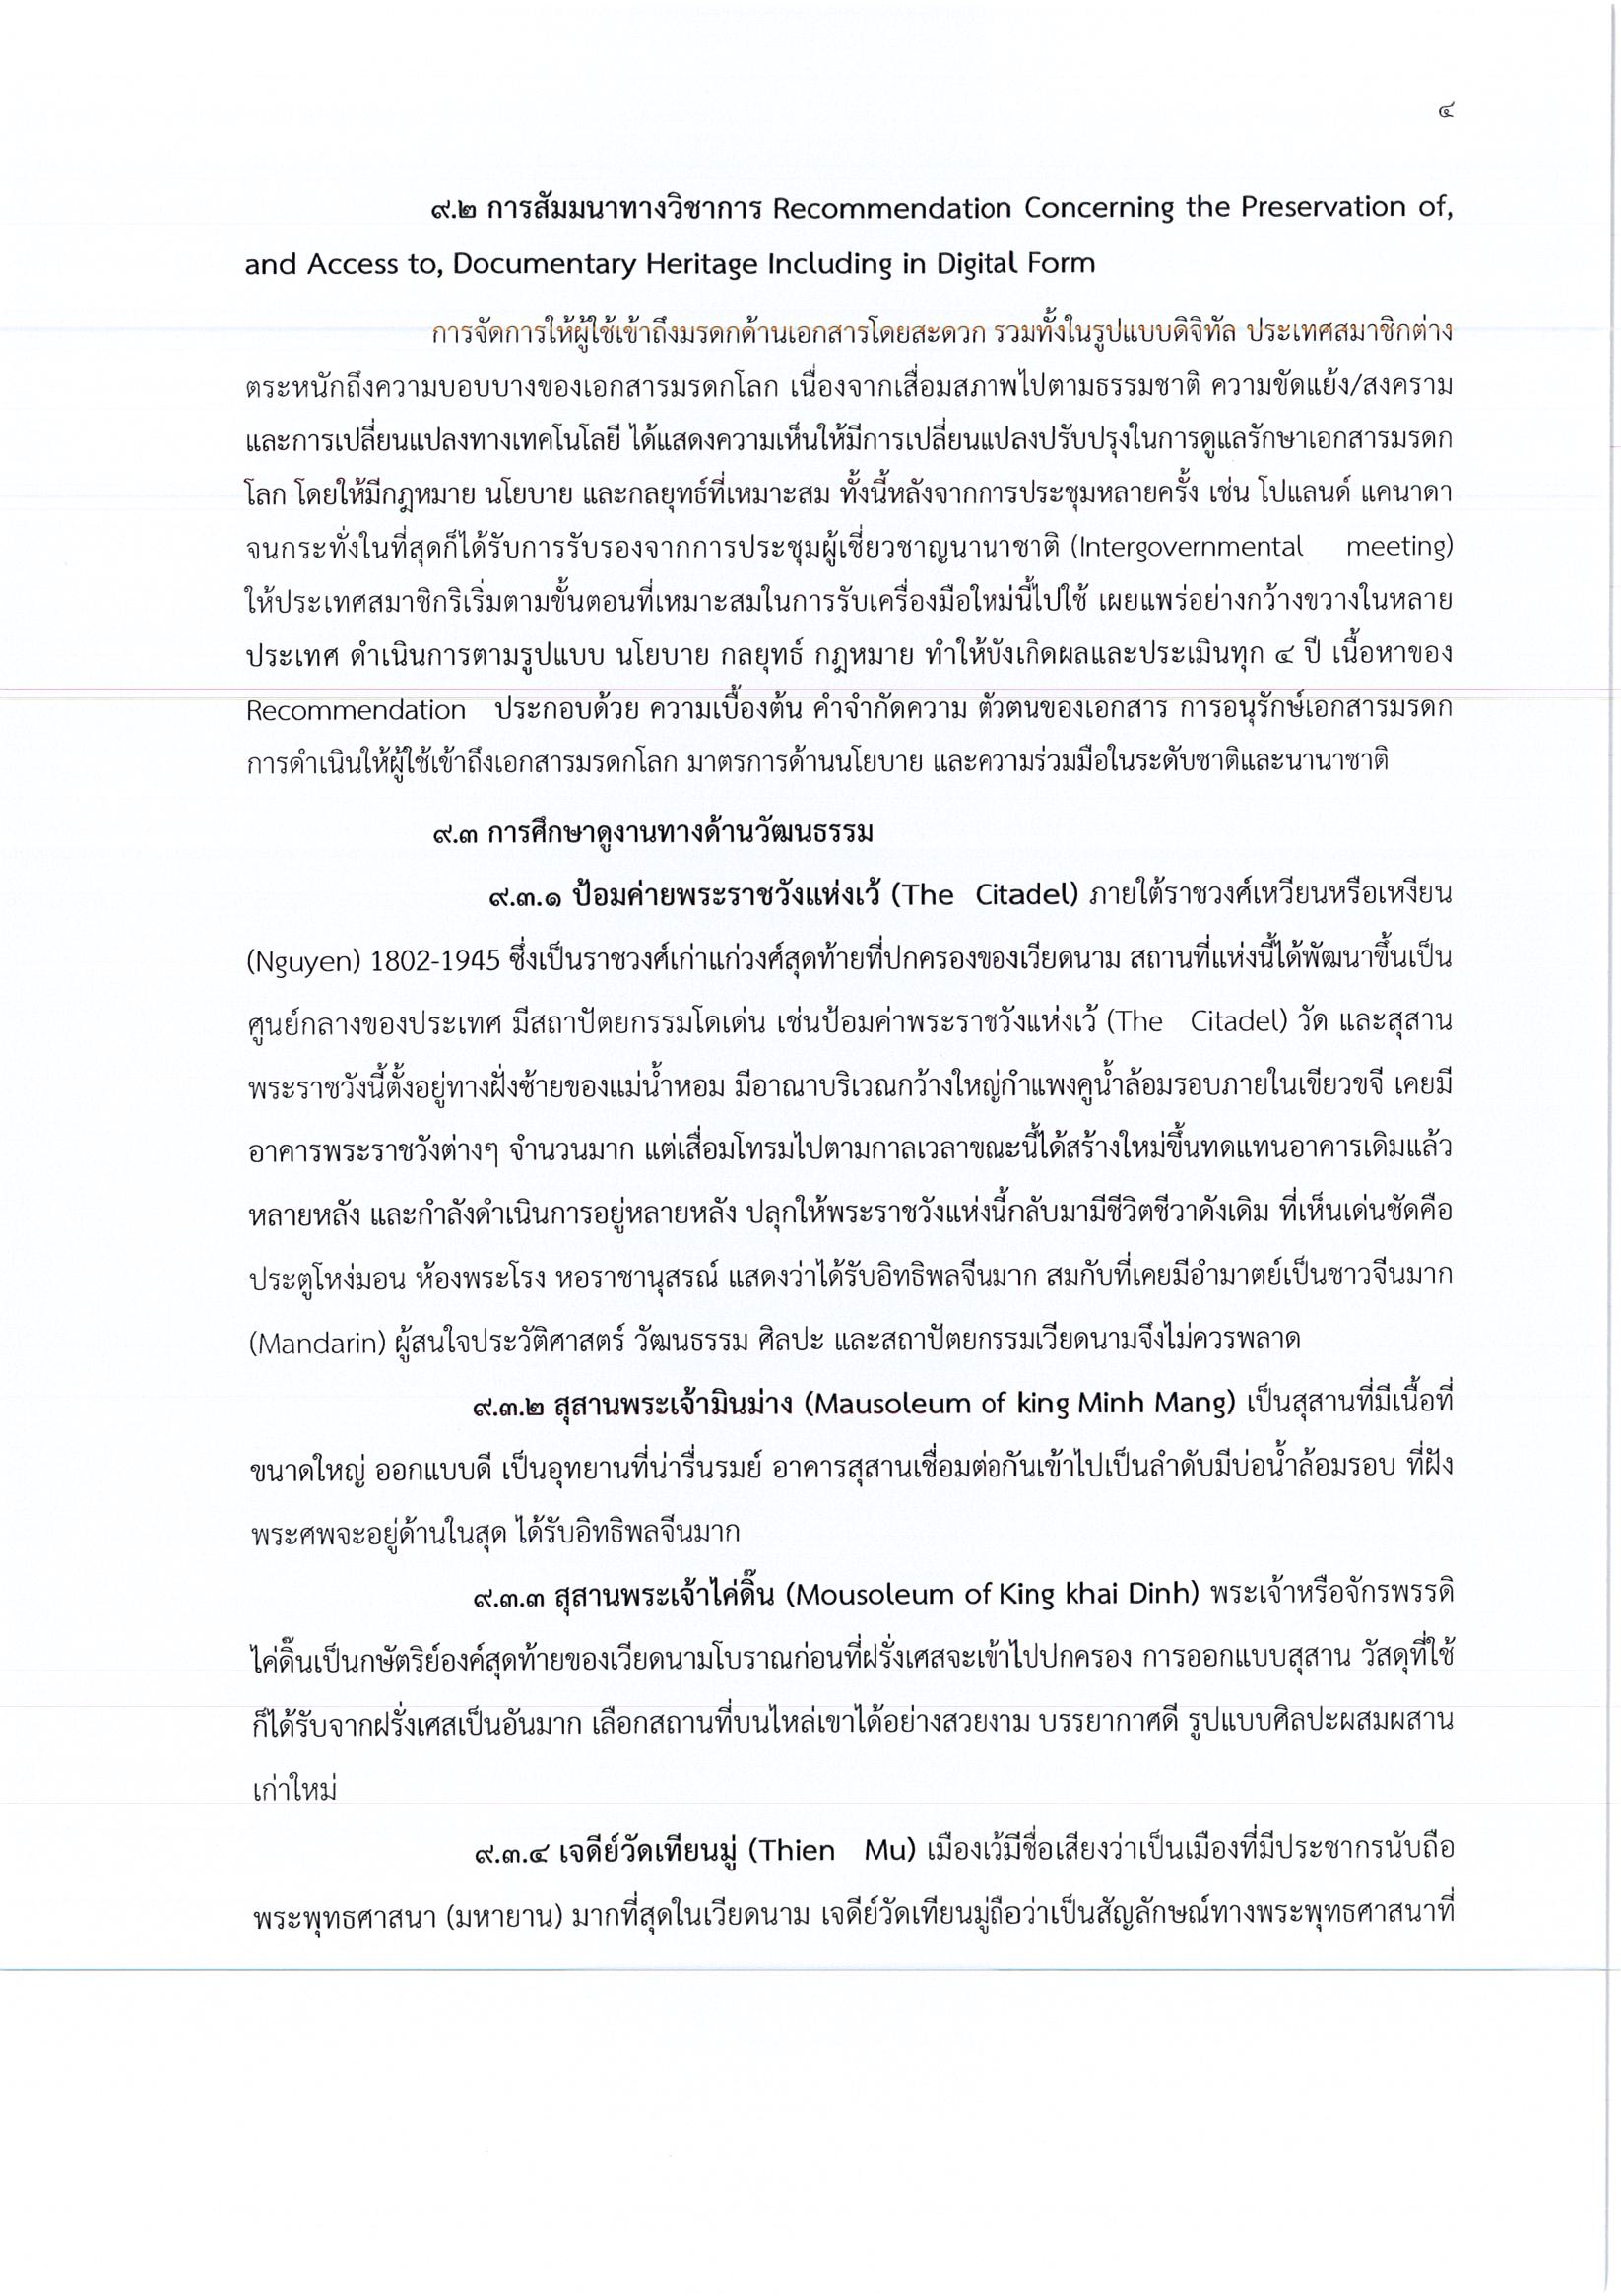 รายงานการเดินทางไปราชการ ณ สาธารณรัฐสังคมนิยมเวียดนาม ระหว่างวันที่ 17 – 22 พฤษภาคม 2559 โครงการเข้าร่วมการประชุมและสัมมนาทางวิชาการ ณ เมืองเว้